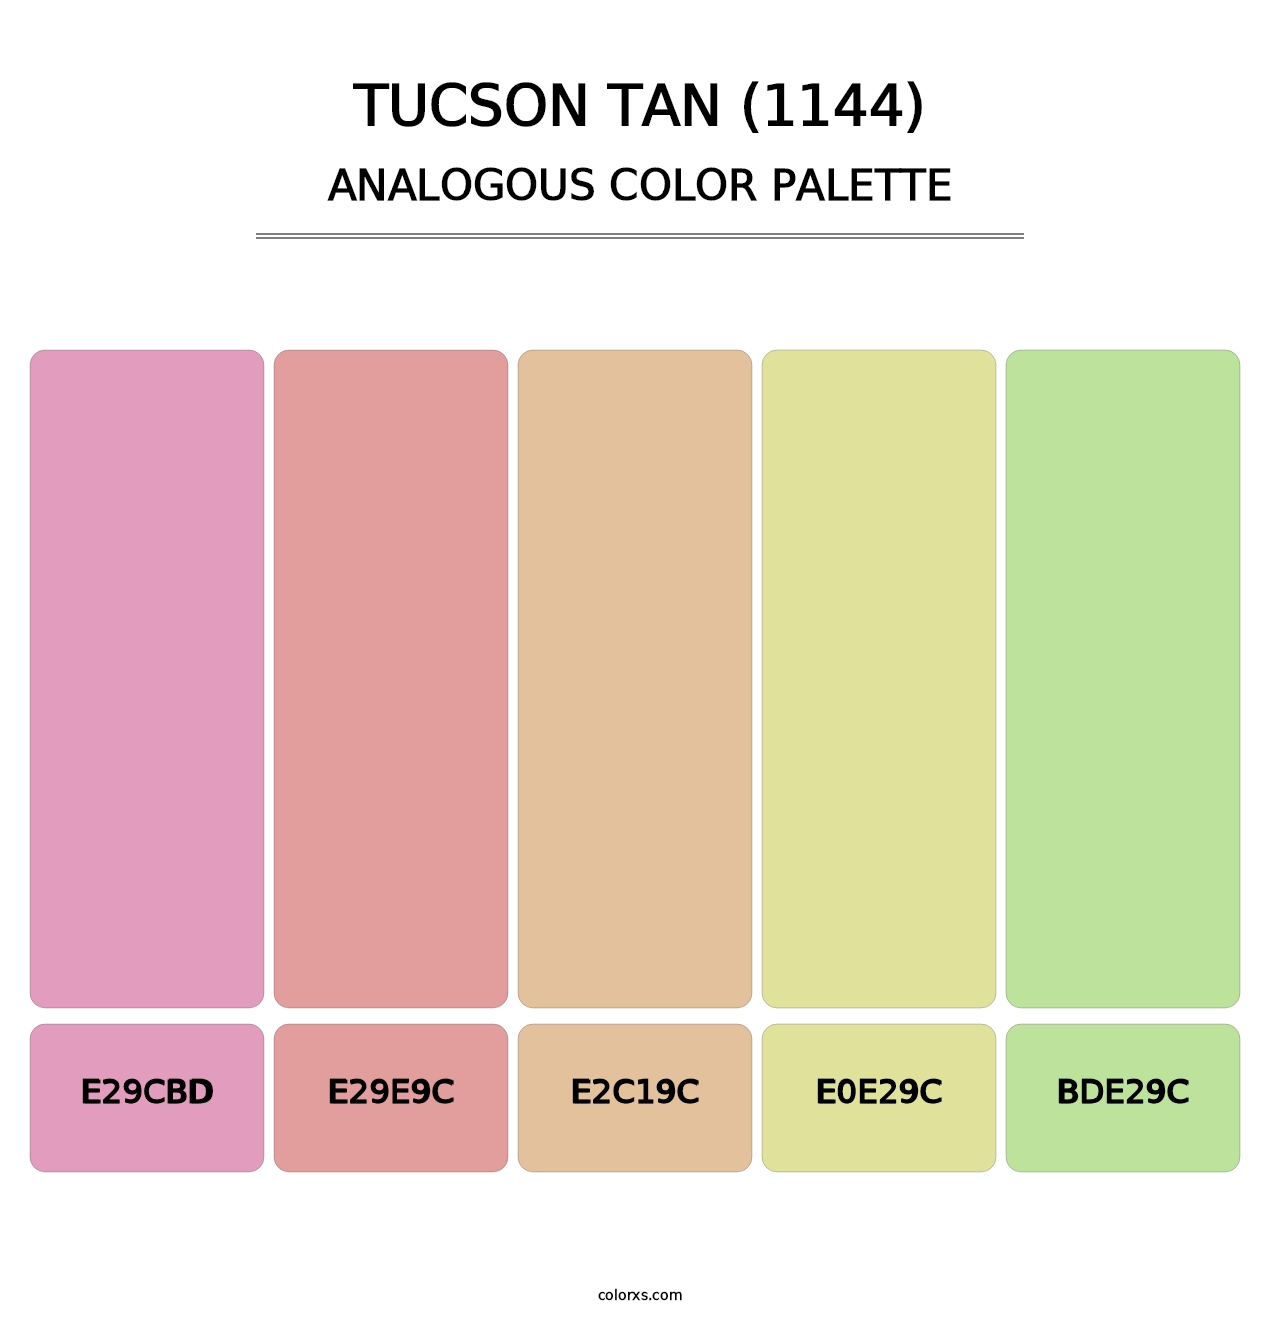 Tucson Tan (1144) - Analogous Color Palette